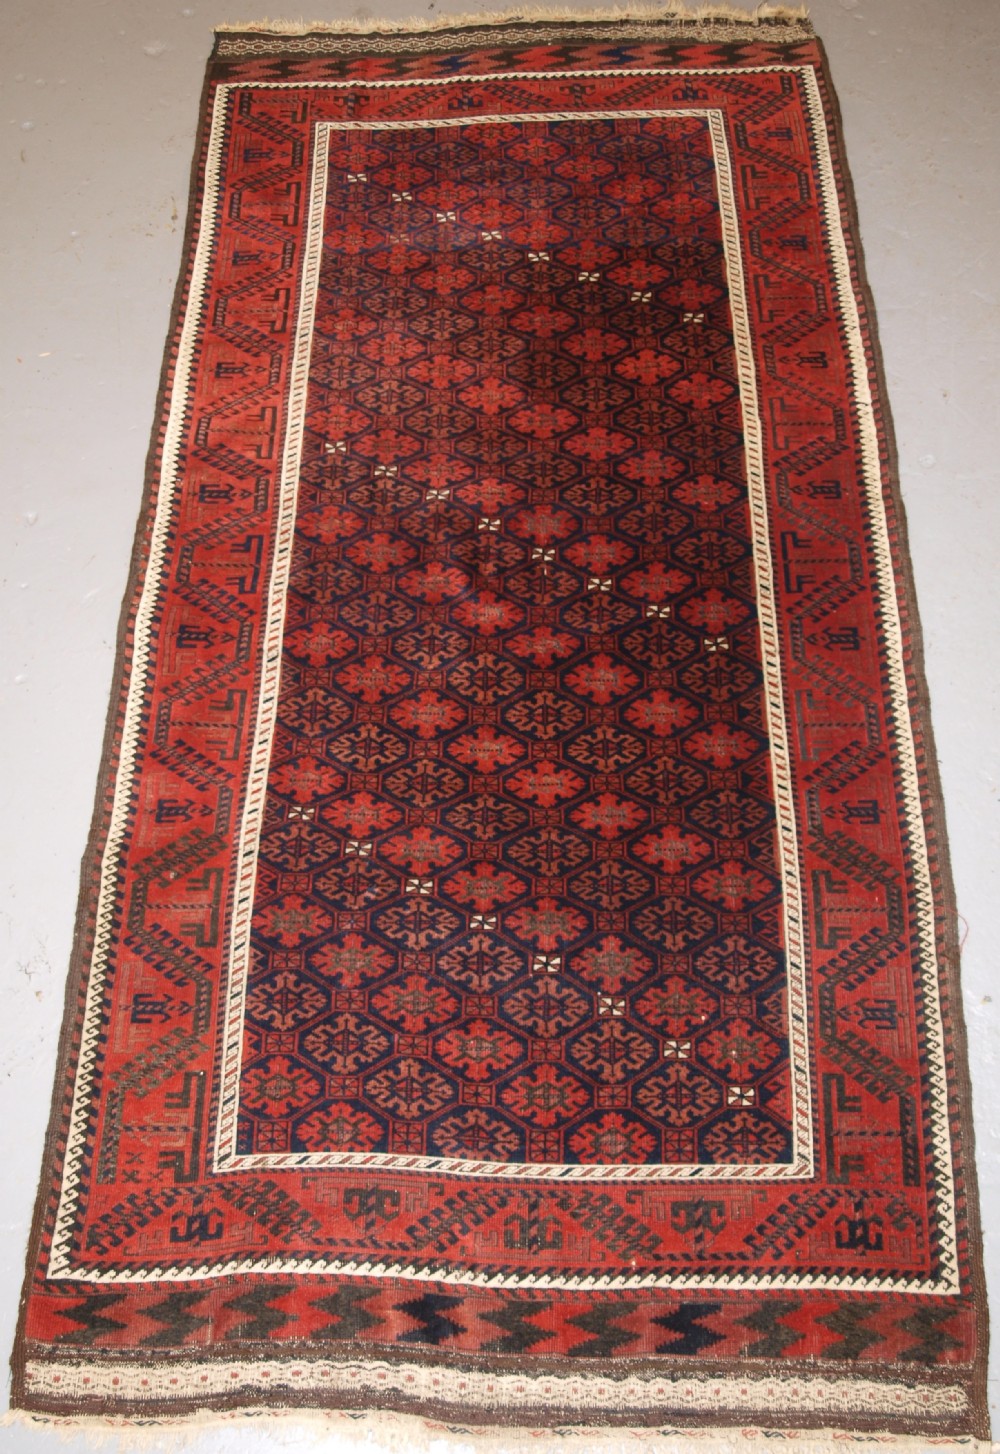 antique baluch rug khorassan region eastern persia snowflake lattice design 4th quarter 19th century